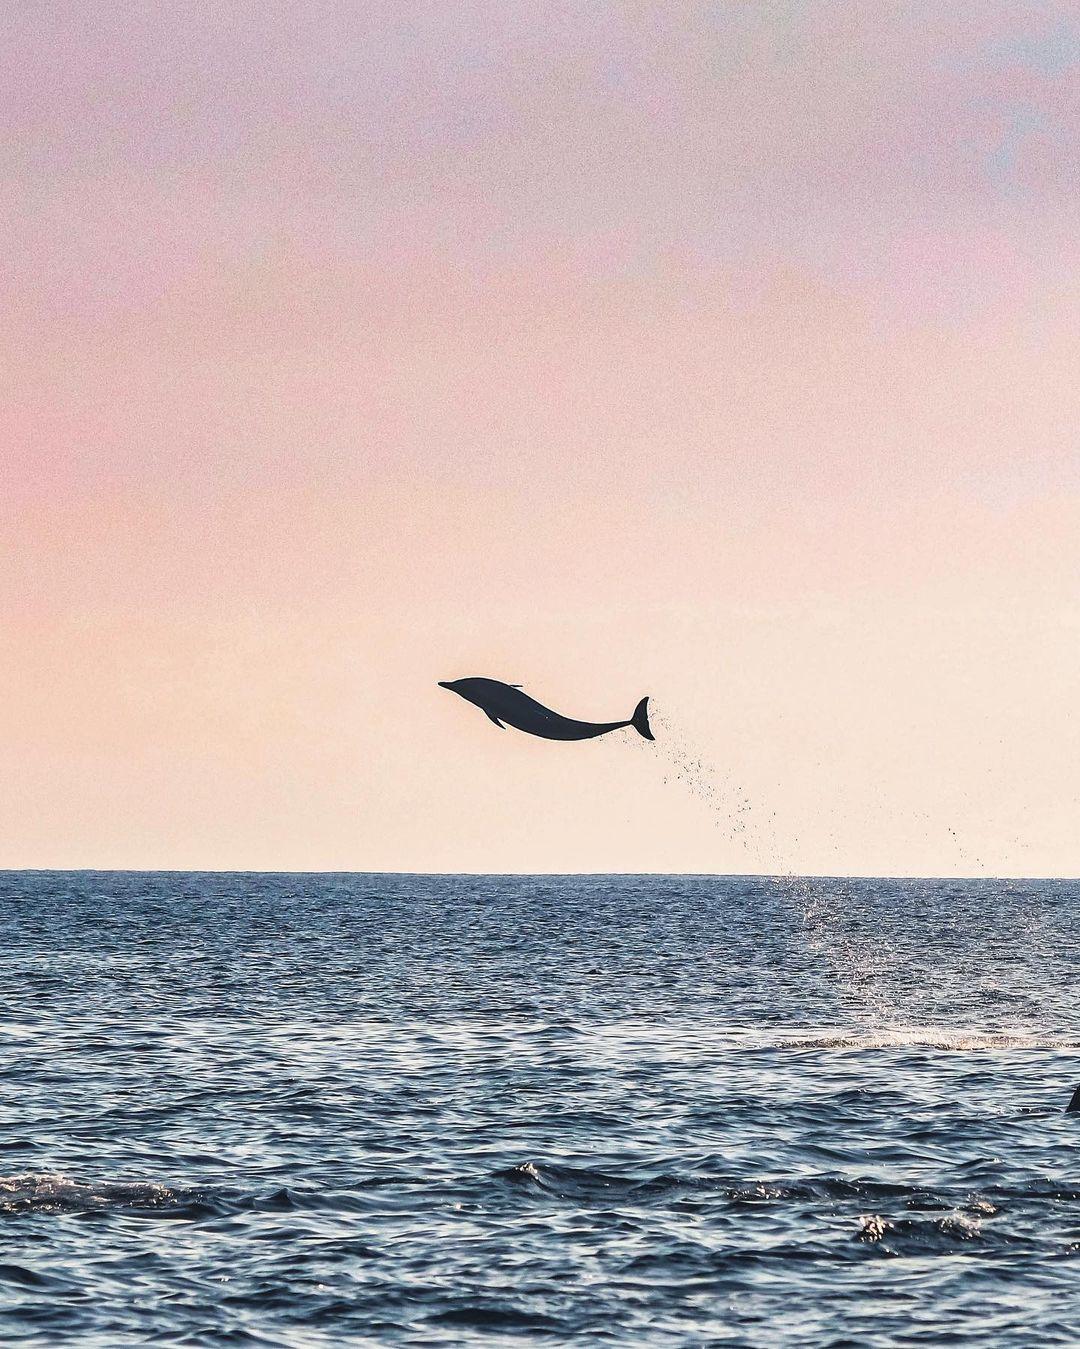  跃出水面的海豚，来自摄影师Jennifer。 